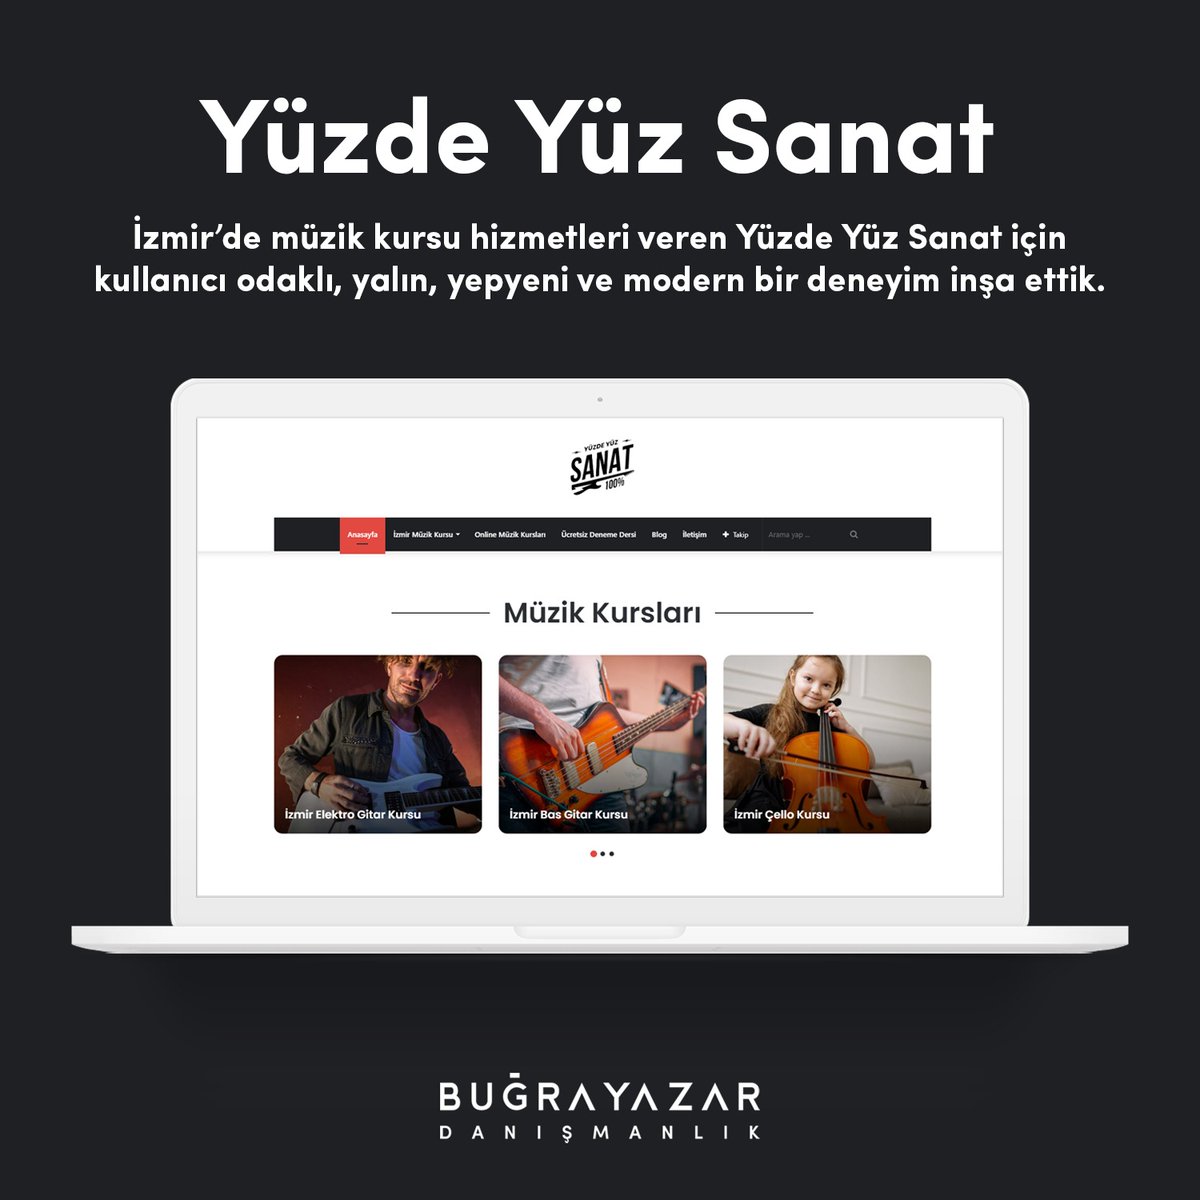 ⚡ İzmir'de müzik kursu hizmetleri veren Yüzde Yüz Sanat için kullanıcı odaklı, yalın, yepyeni ve modern bir deneyim inşa ettik.
🔗 yuzdeyuzsanat.com

#webtasarim #wordpress #wordpressuzmani